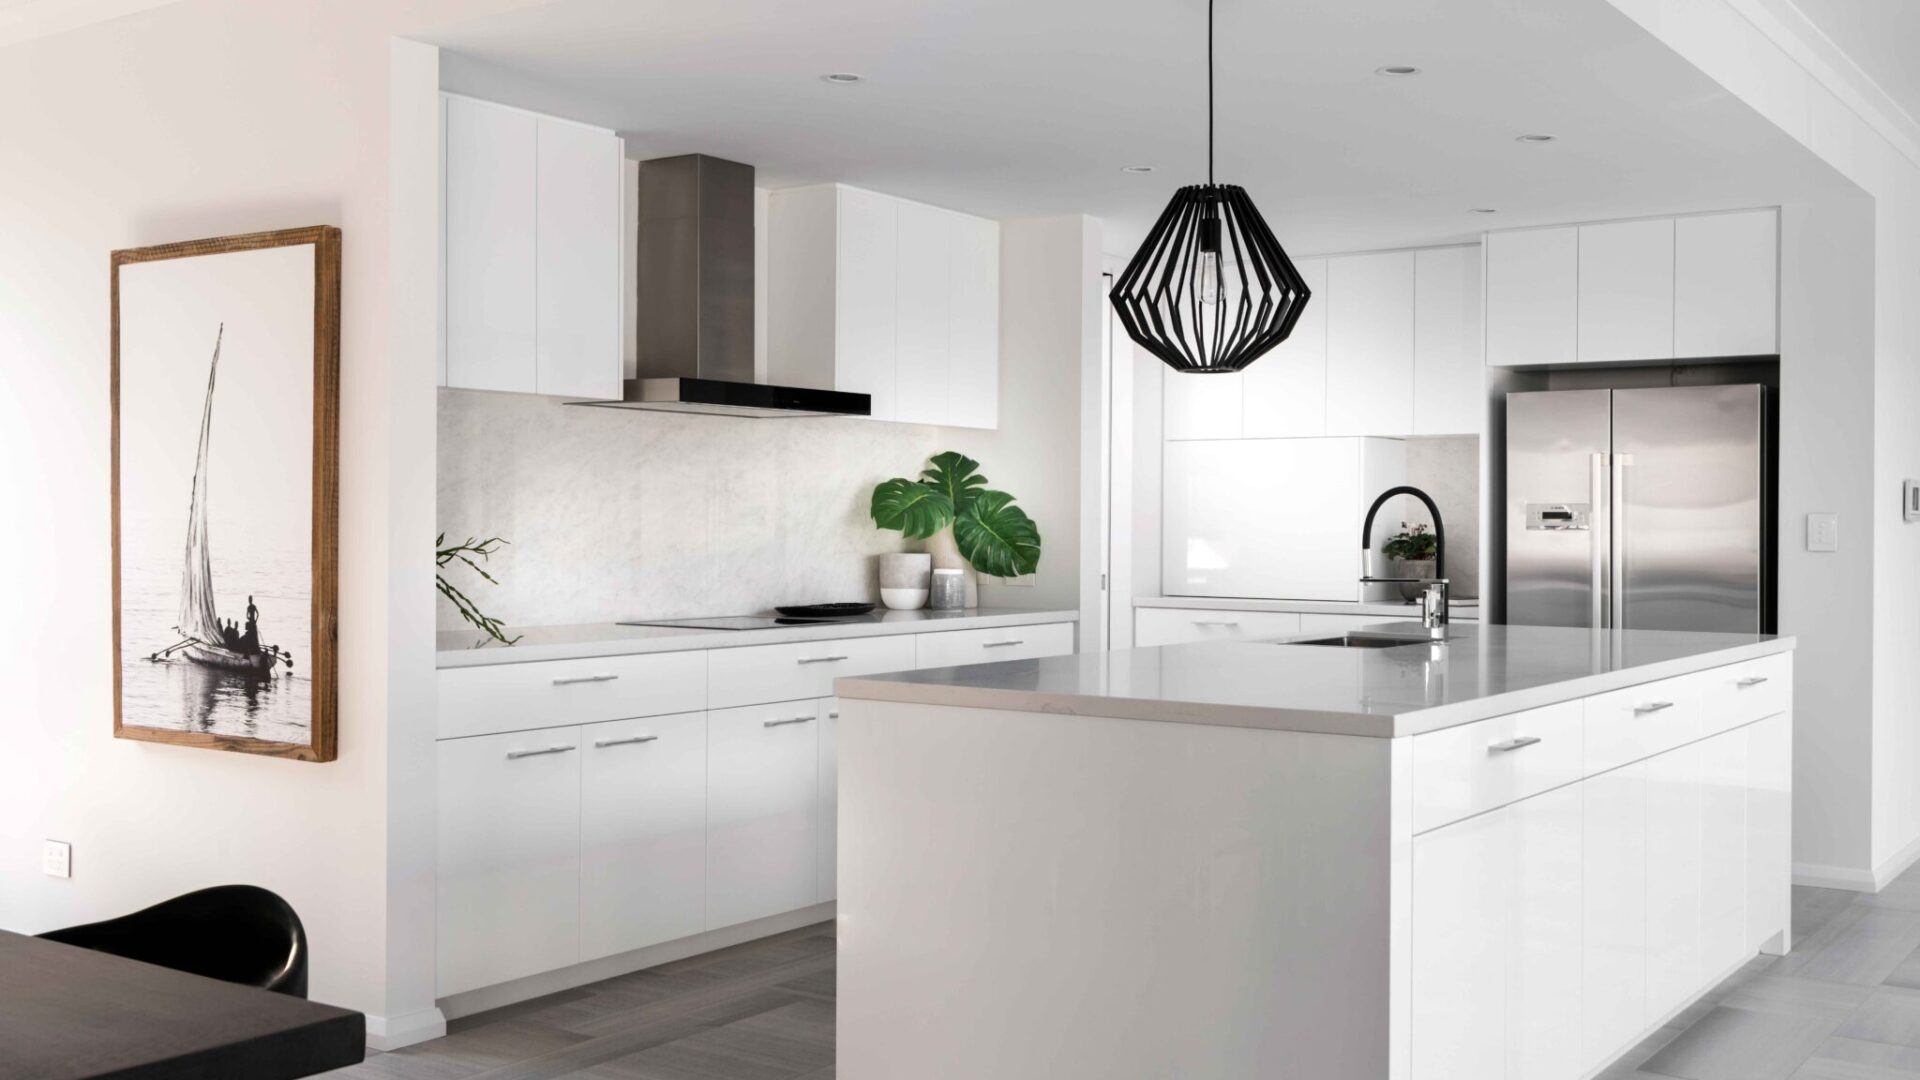 Contemporary home designs Perth - Kitchen